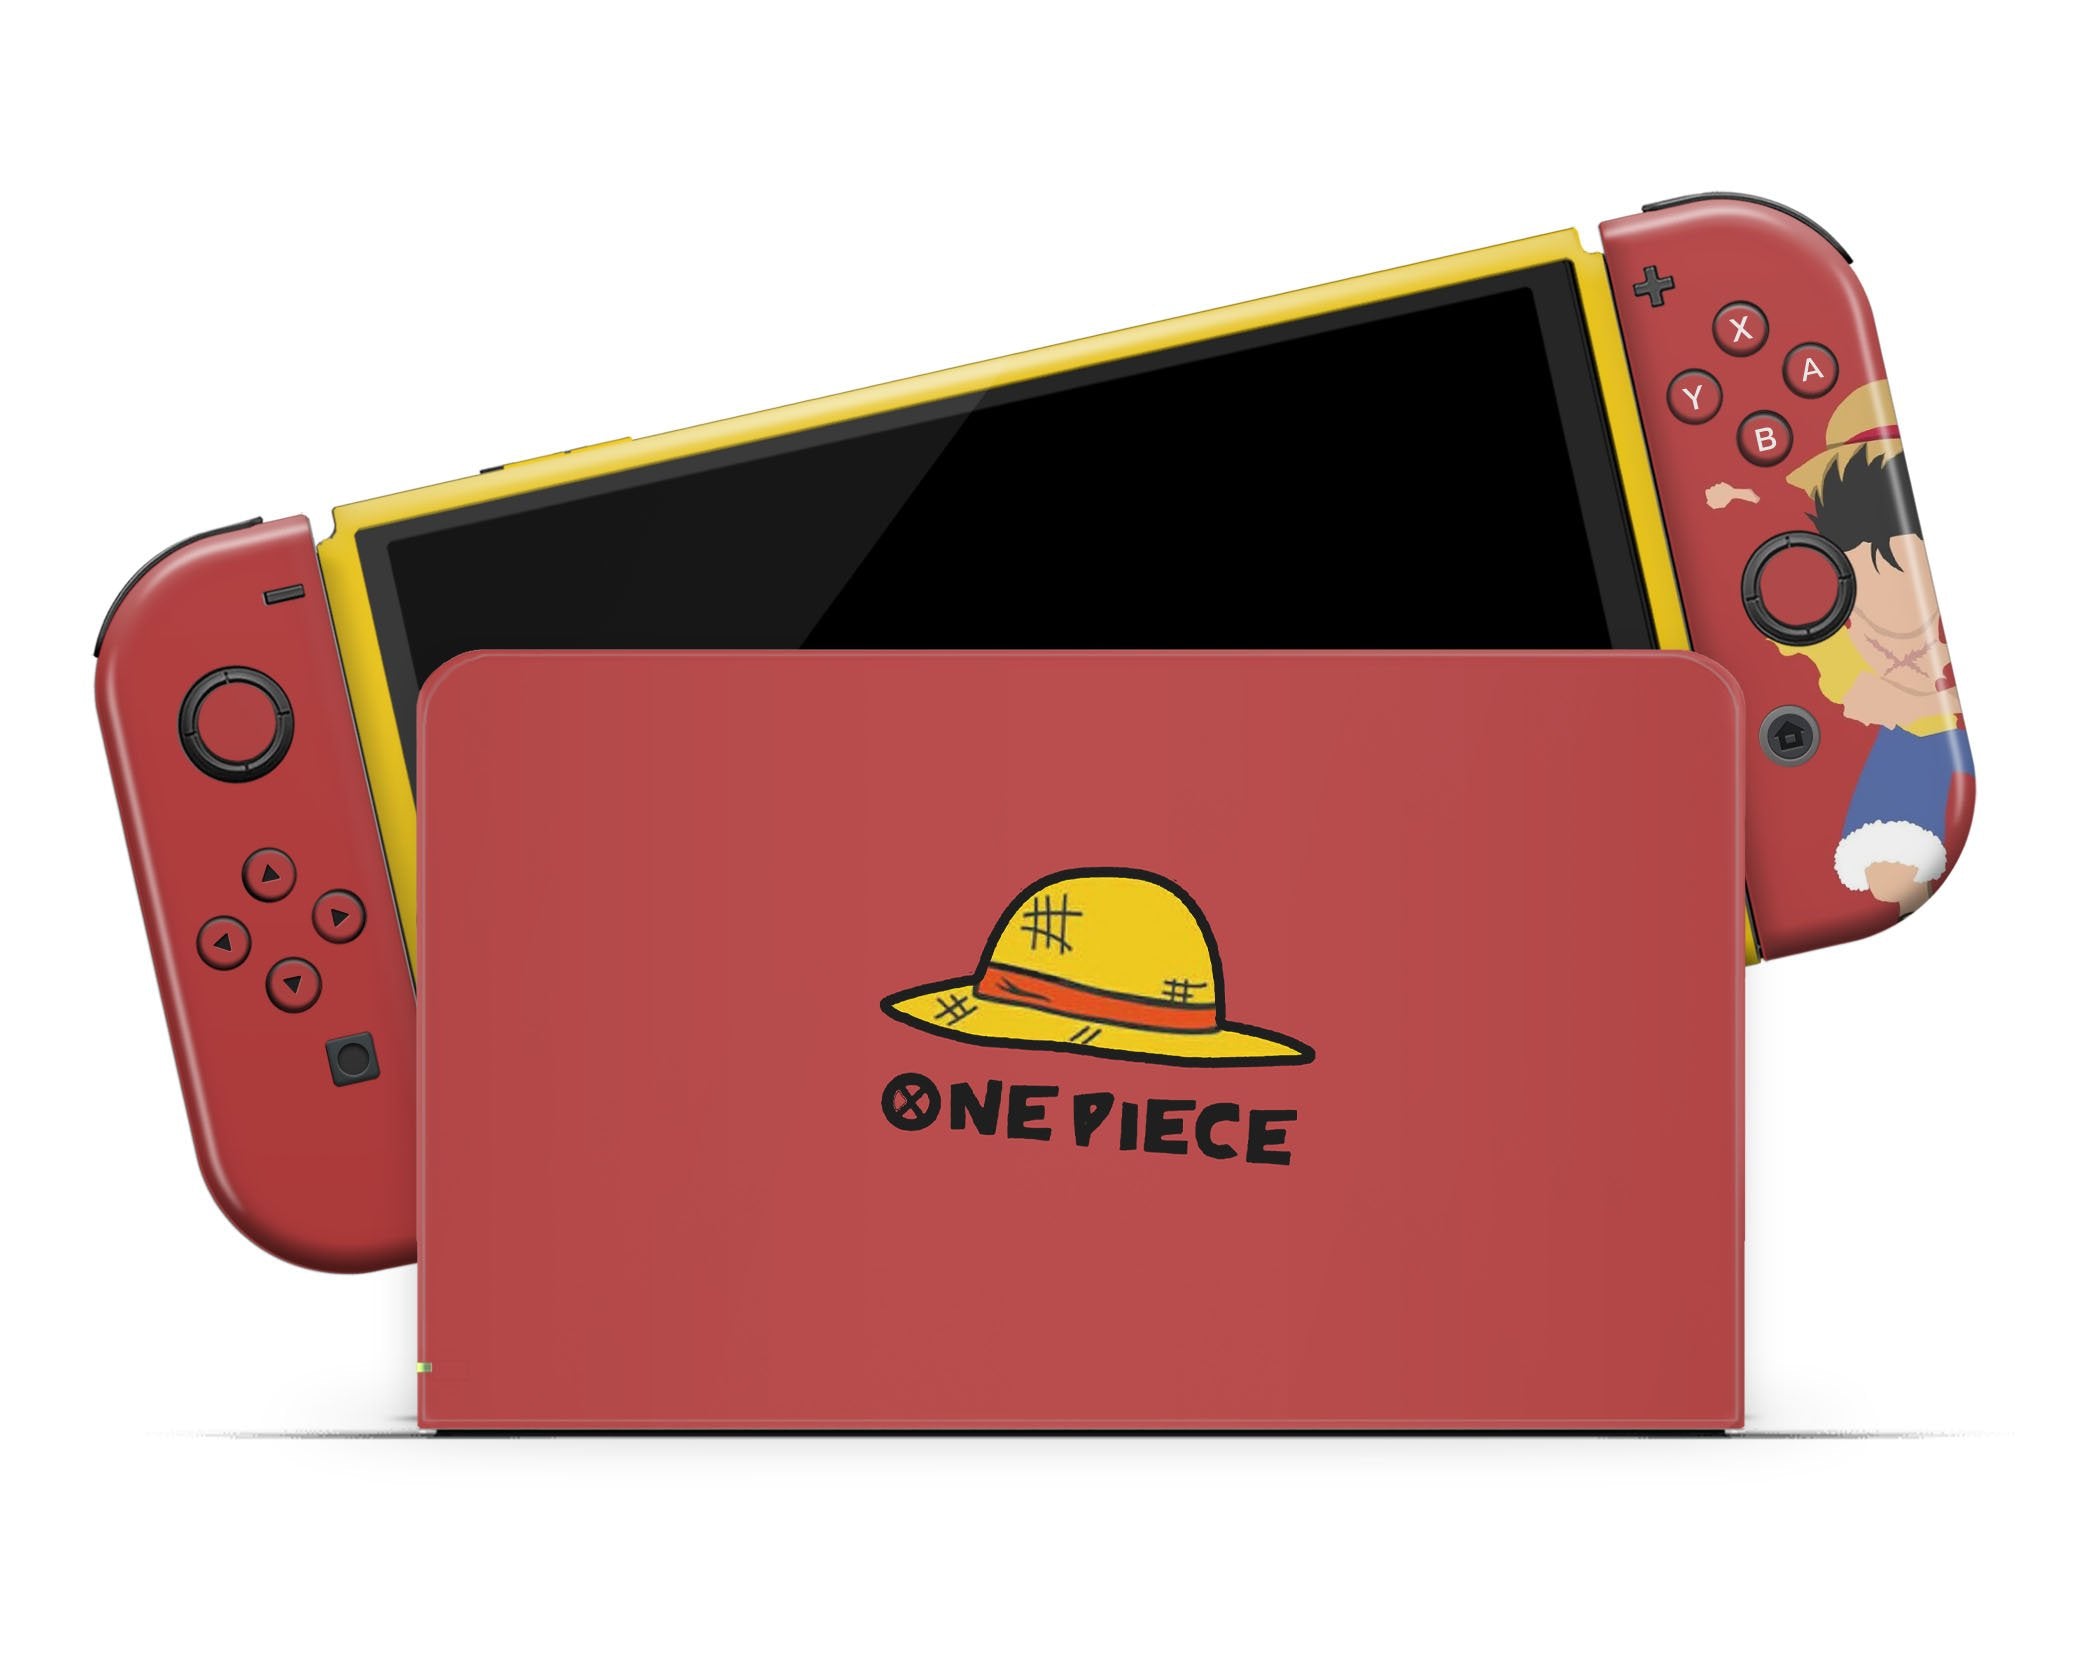 One Piece Nintendo Switch Custom Joy-Cons